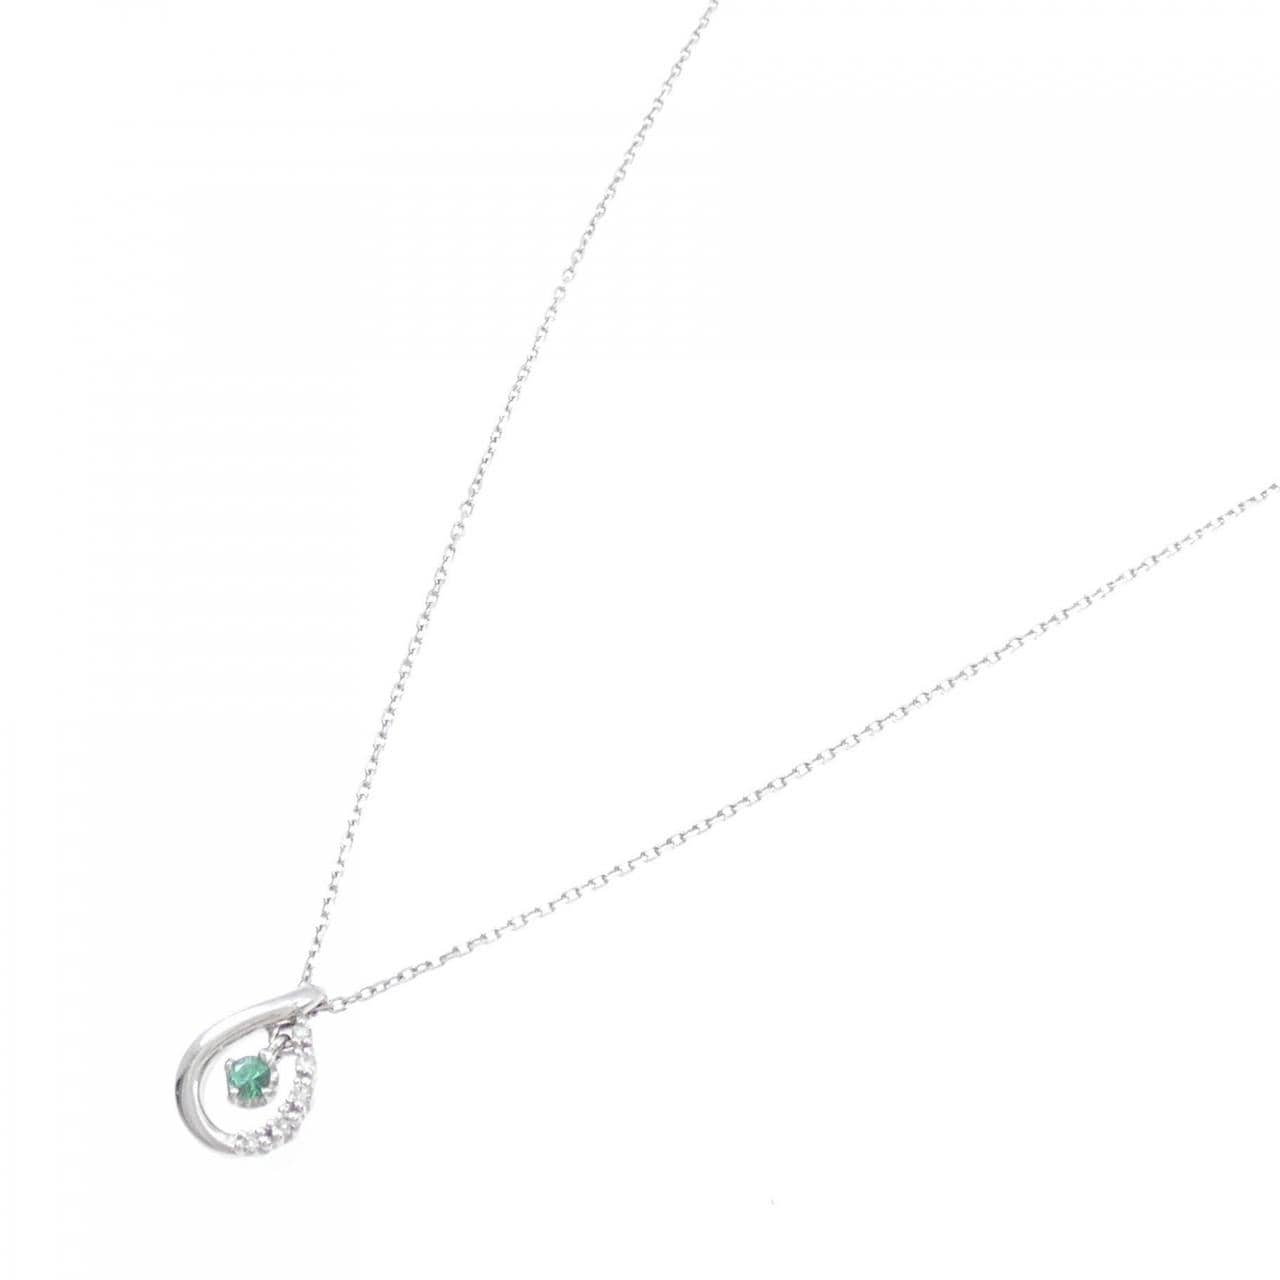 K18WG Tourmaline necklace 0.05CT